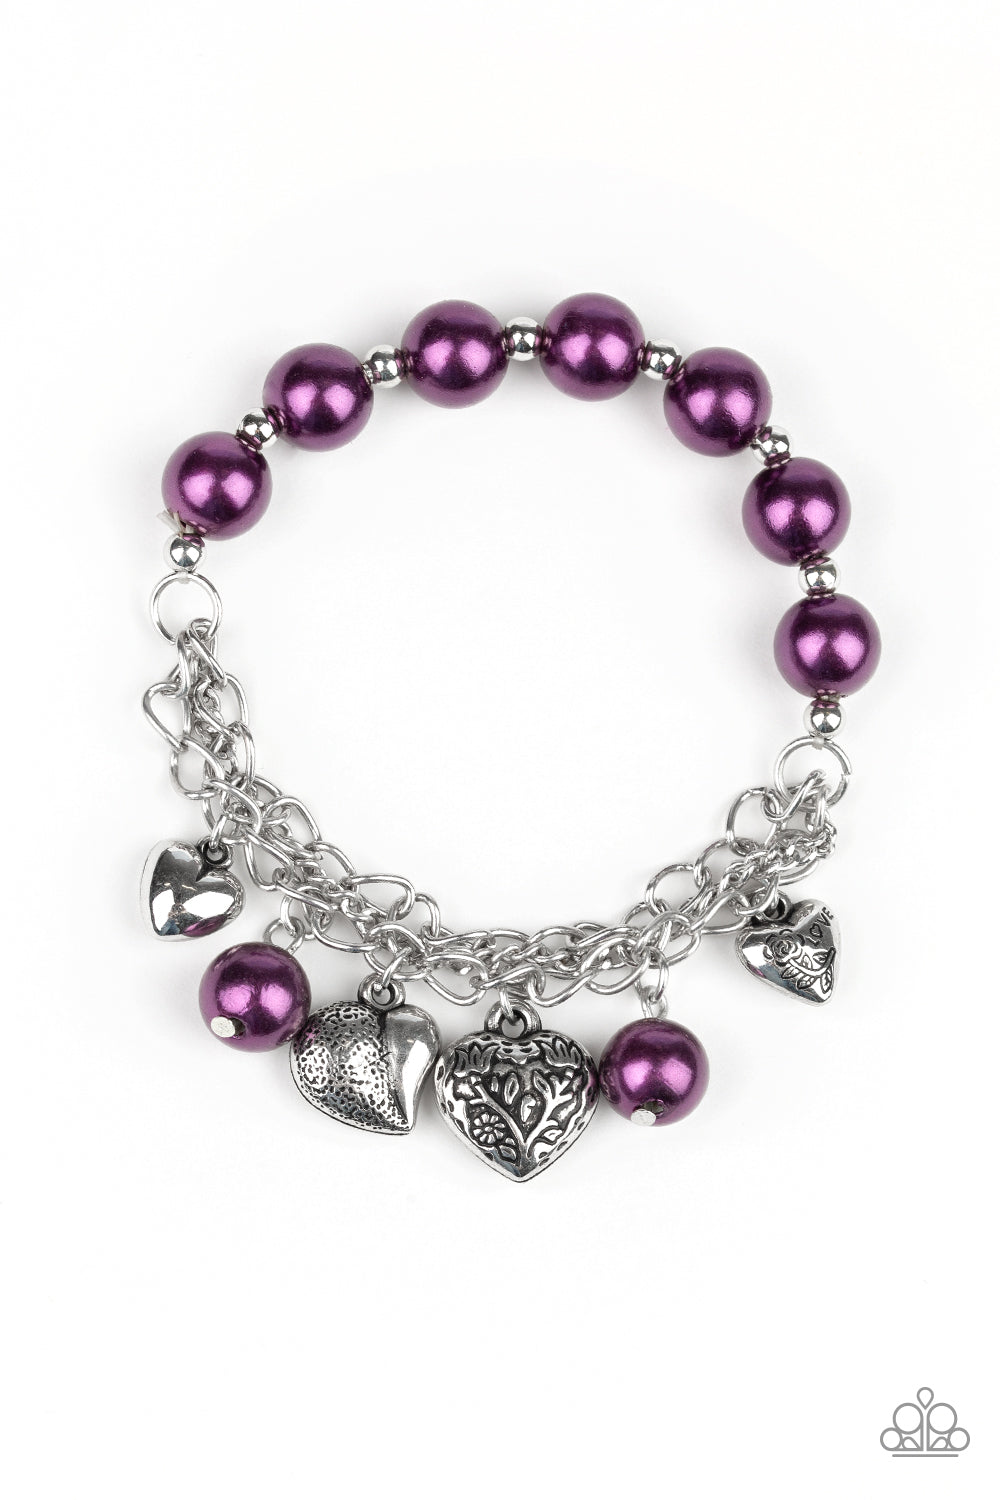 More Amour Purple Charm Bracelet - Paparazzi Accessories